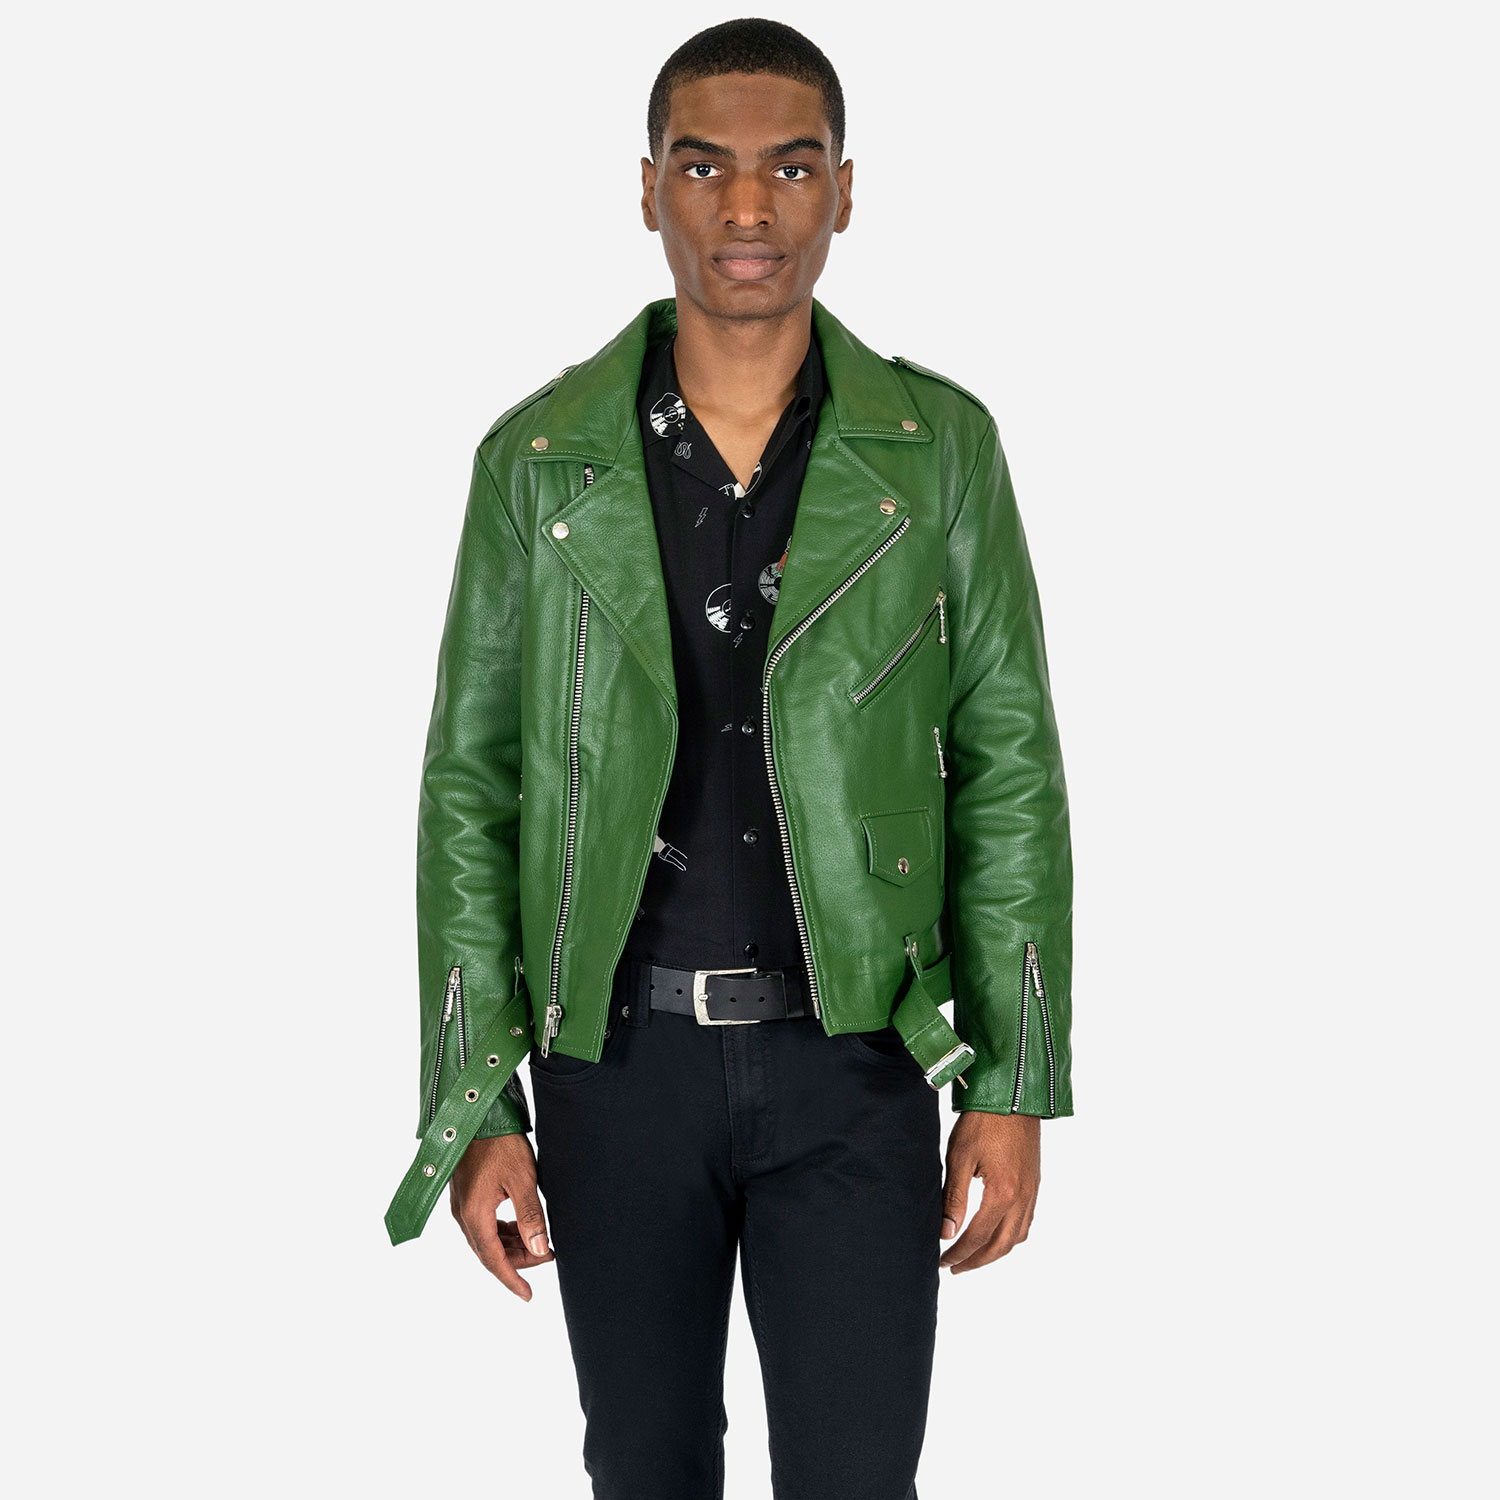 Straight to Hell Jet - Green Varsity Jacket